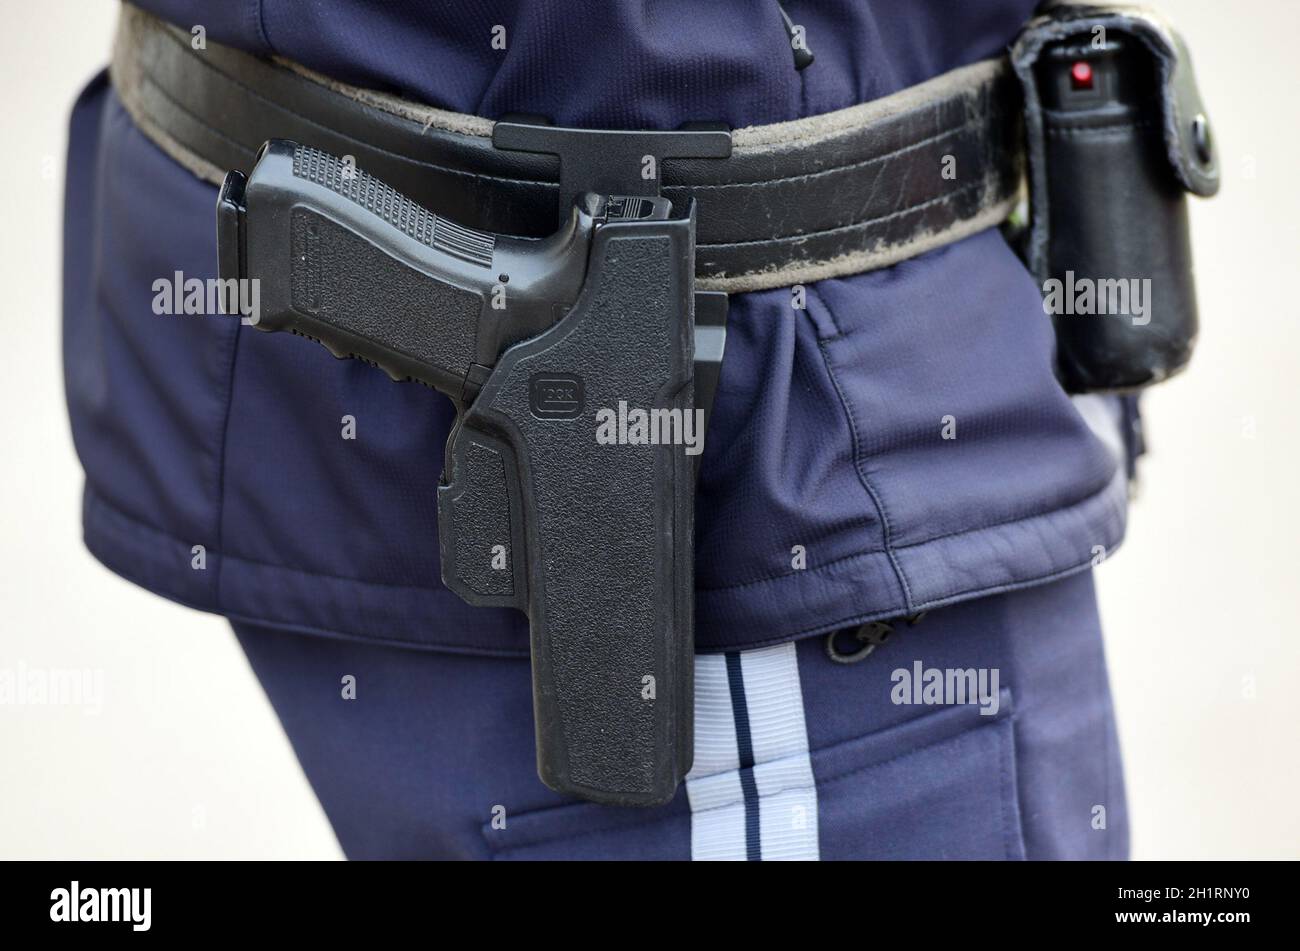 Detailaufnahme einer österreichischen Polizei-Pistole 'Glock', Österreich, Europa - Detail of an Austrian police pistol 'Glock', Austria, Europe Stock Photo